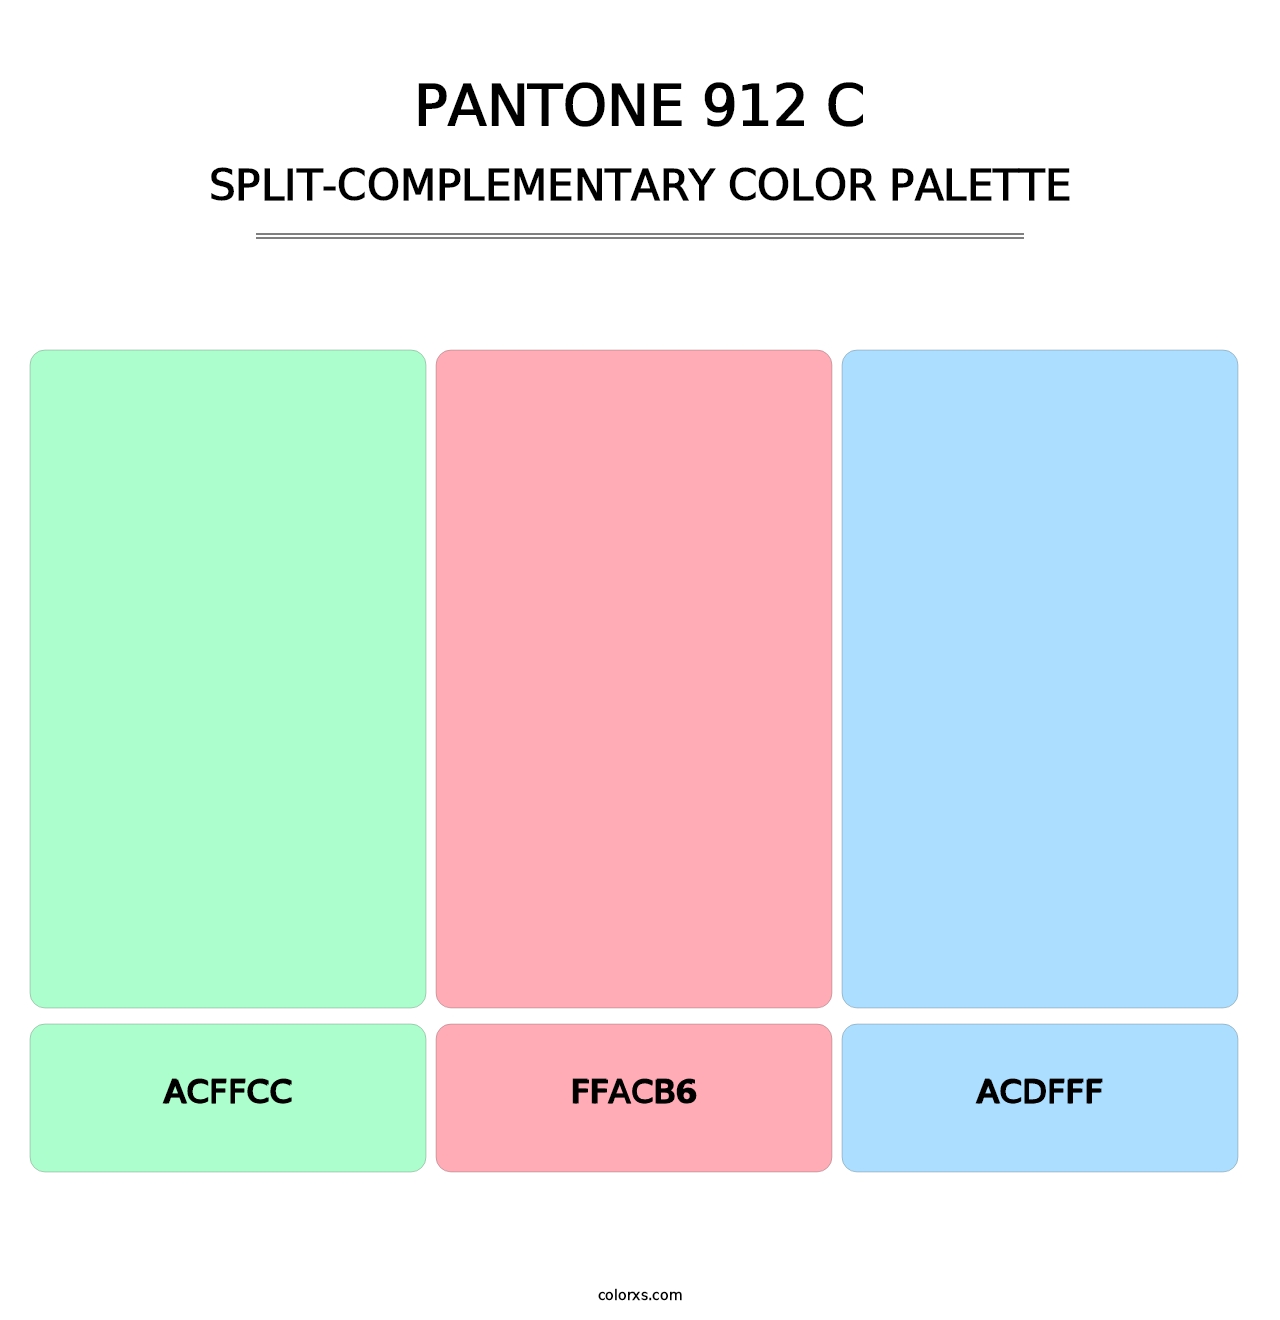 PANTONE 912 C - Split-Complementary Color Palette